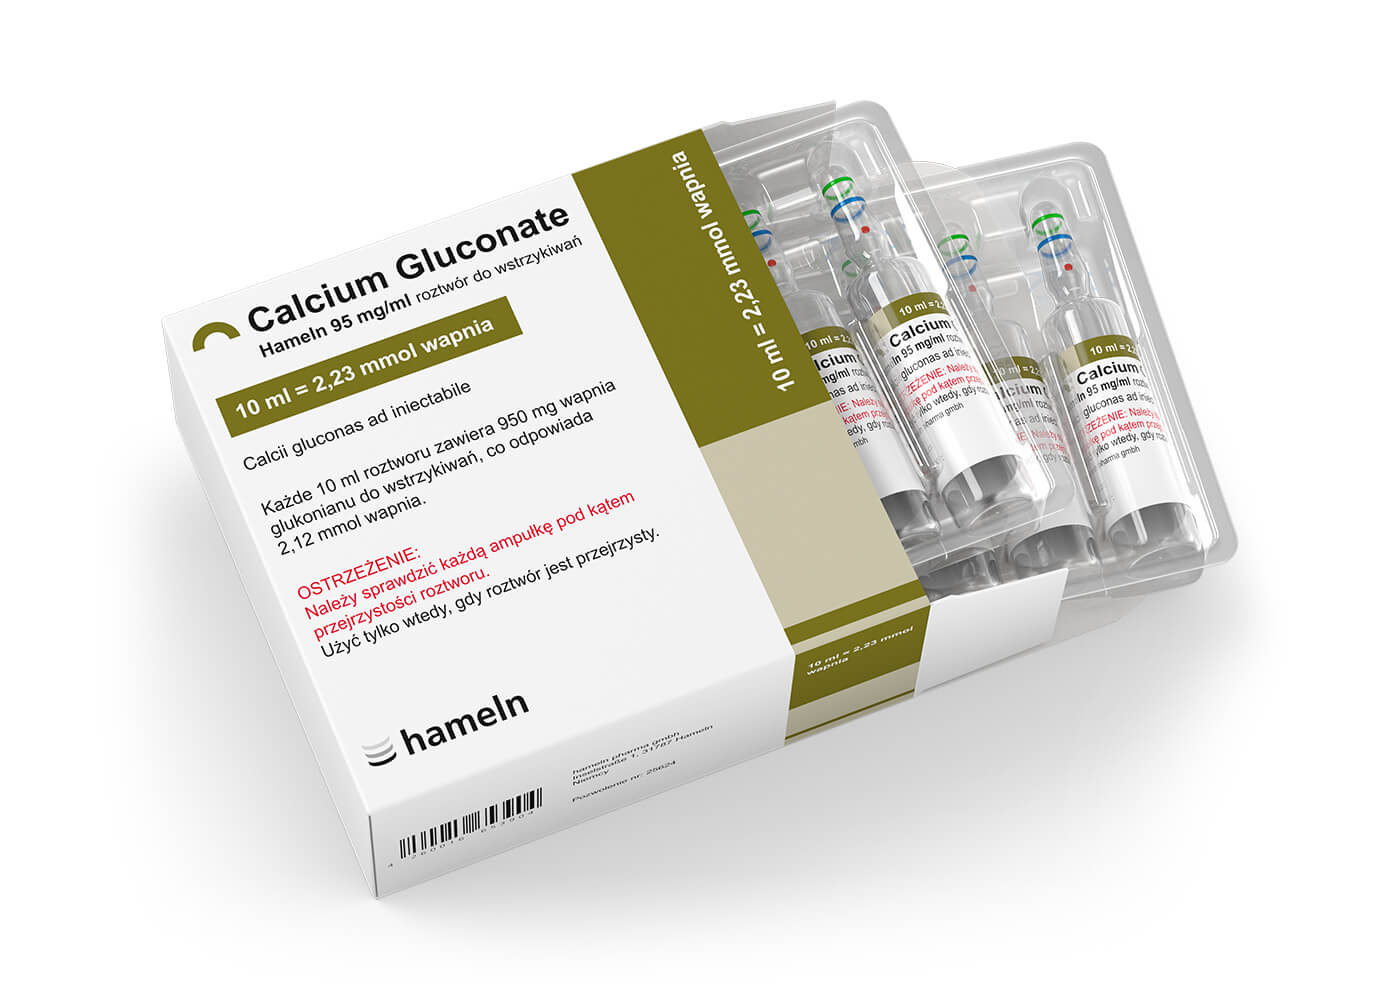 Calcium_Gluconate_PL_10Prozent_in_10_ml_Pack-Amp_10St_HBM_2020-43